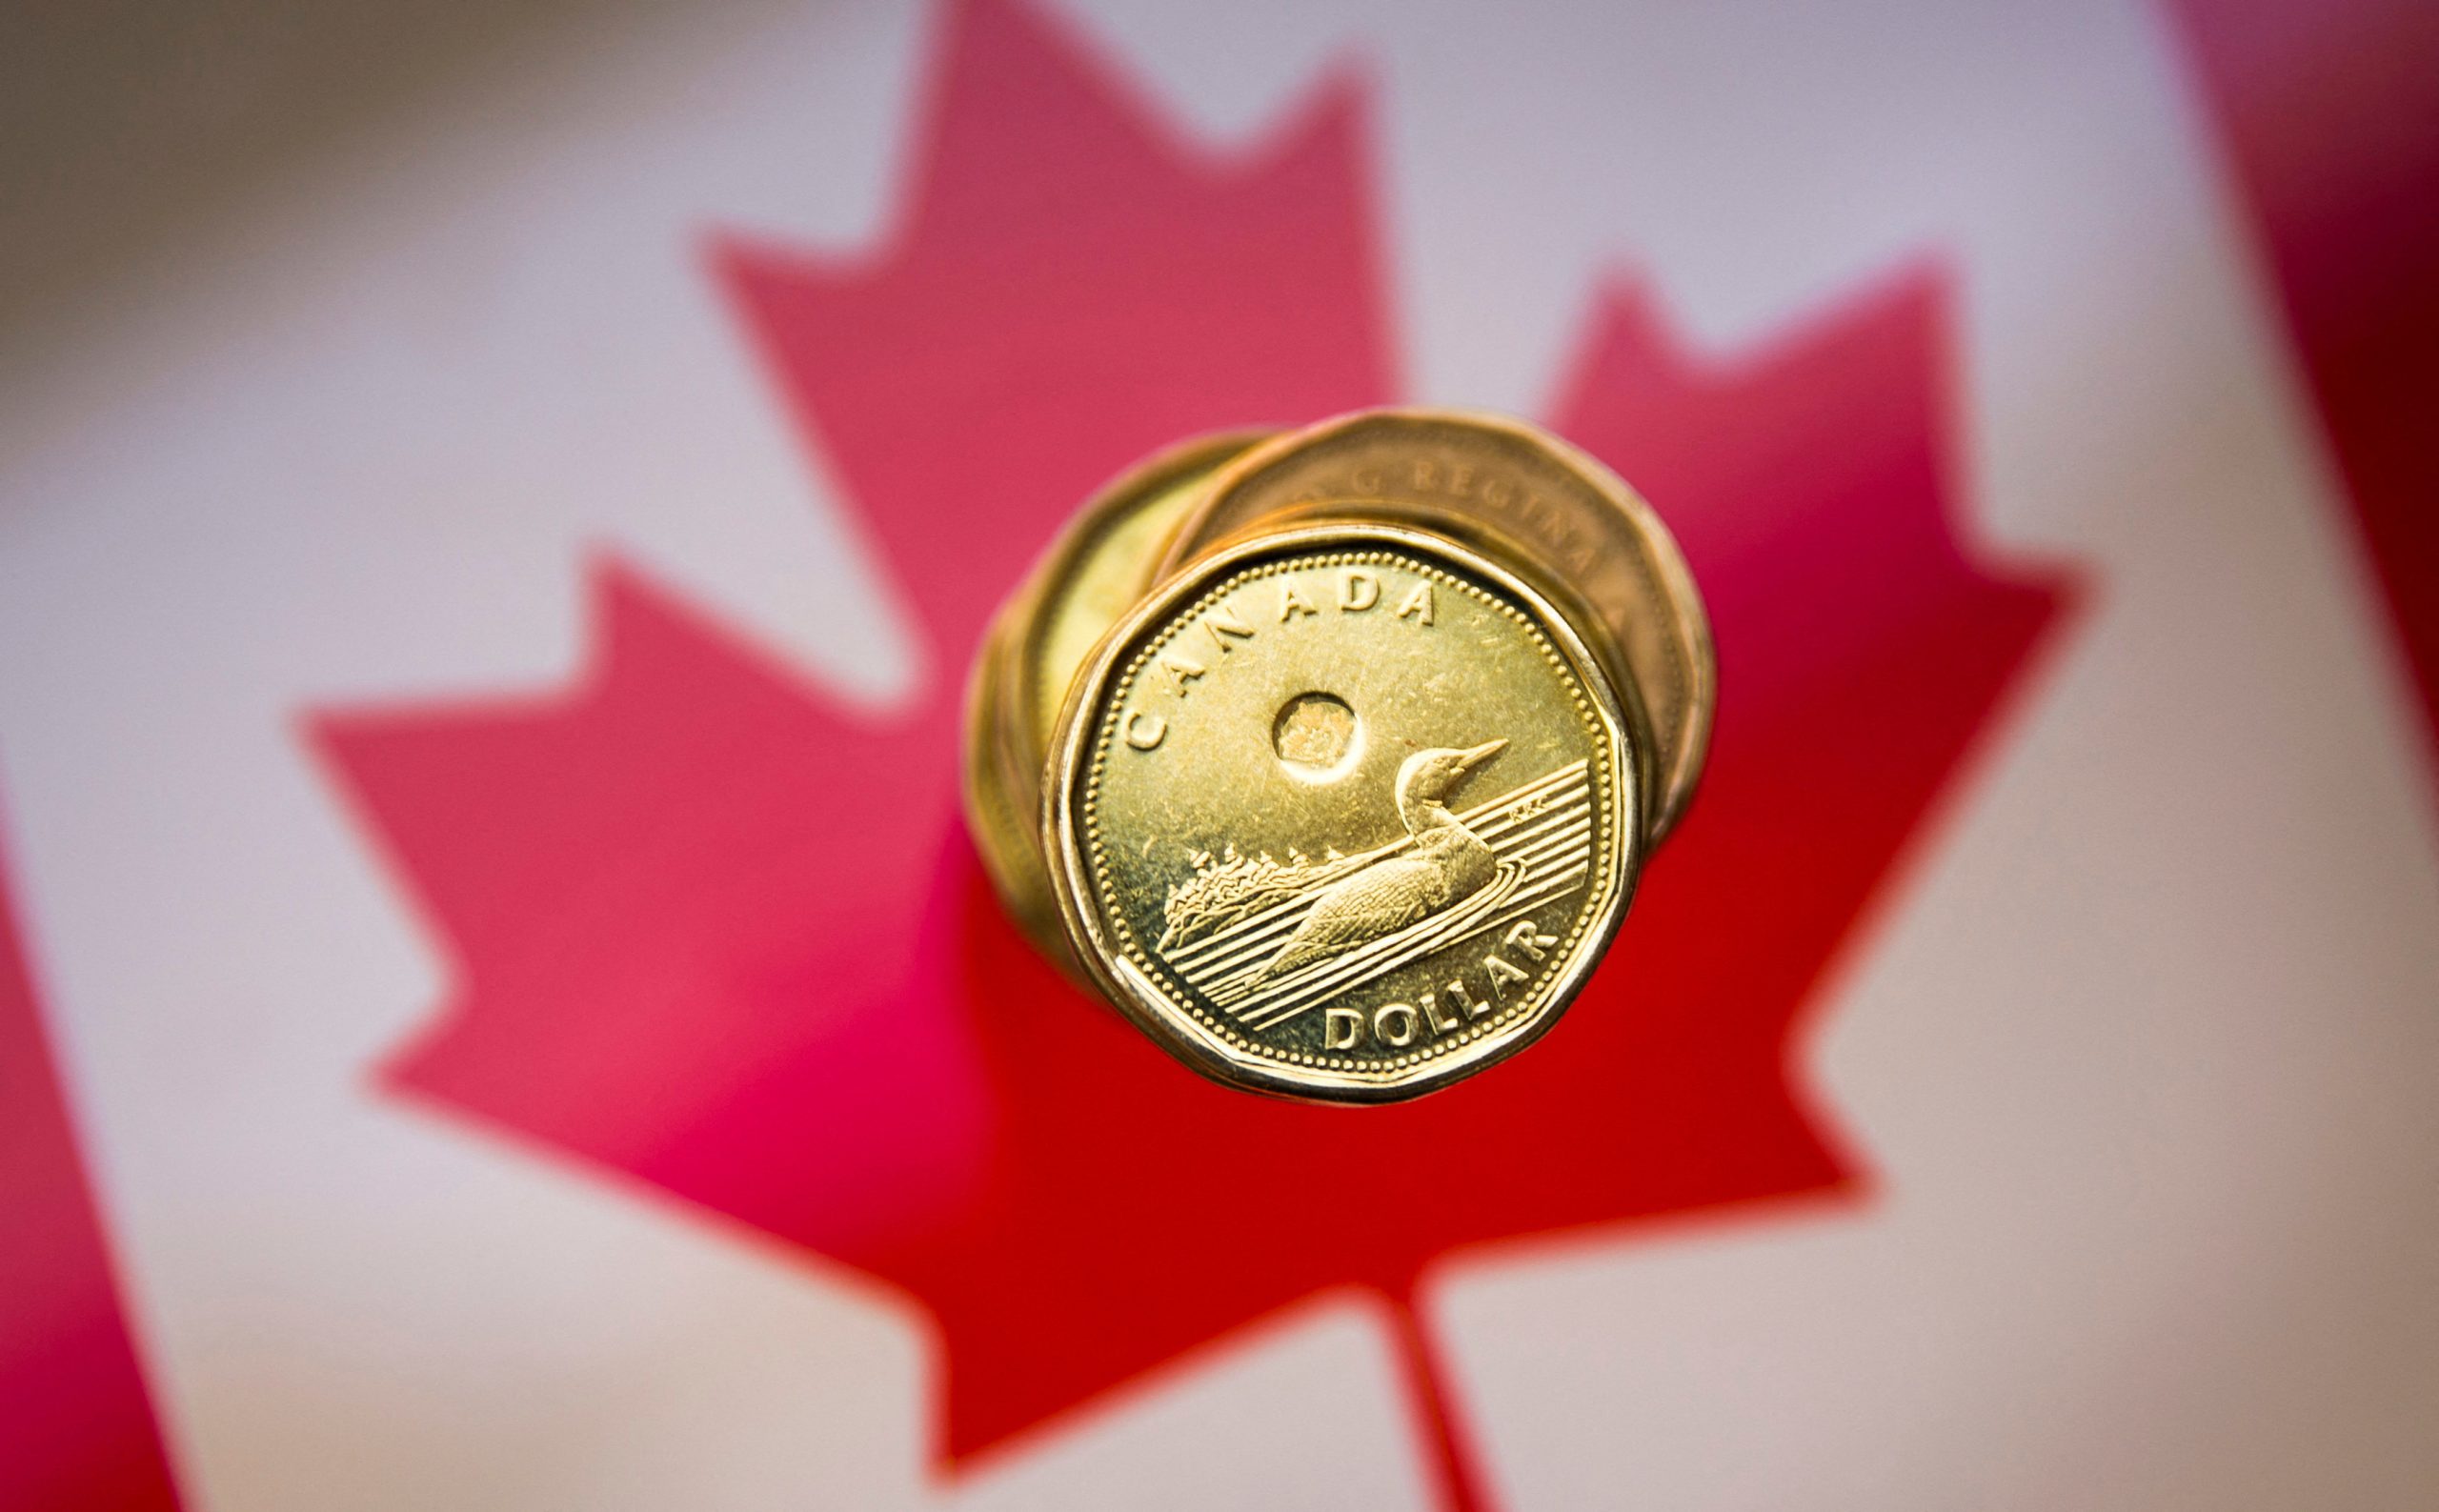 Dollari kanadez merr një rrahje ndërsa inflacioni në SHBA mbetet i nxehtë